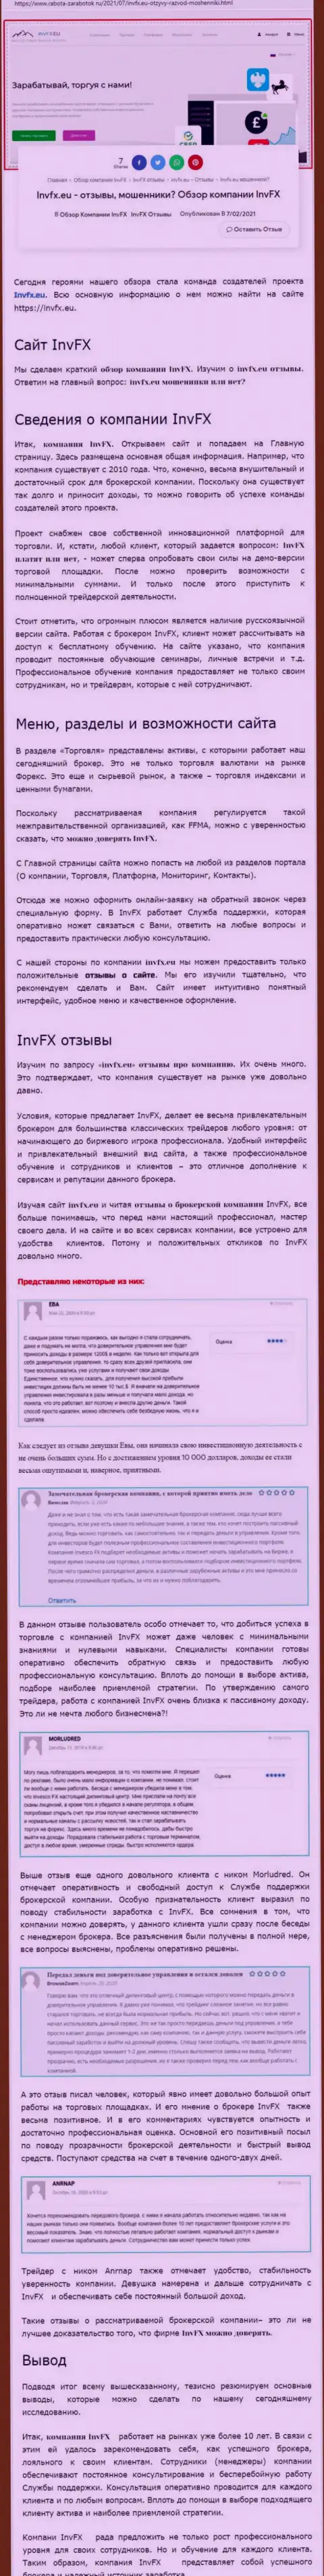 Материал сайта Работа Заработок Ру о Форекс компании INVFX